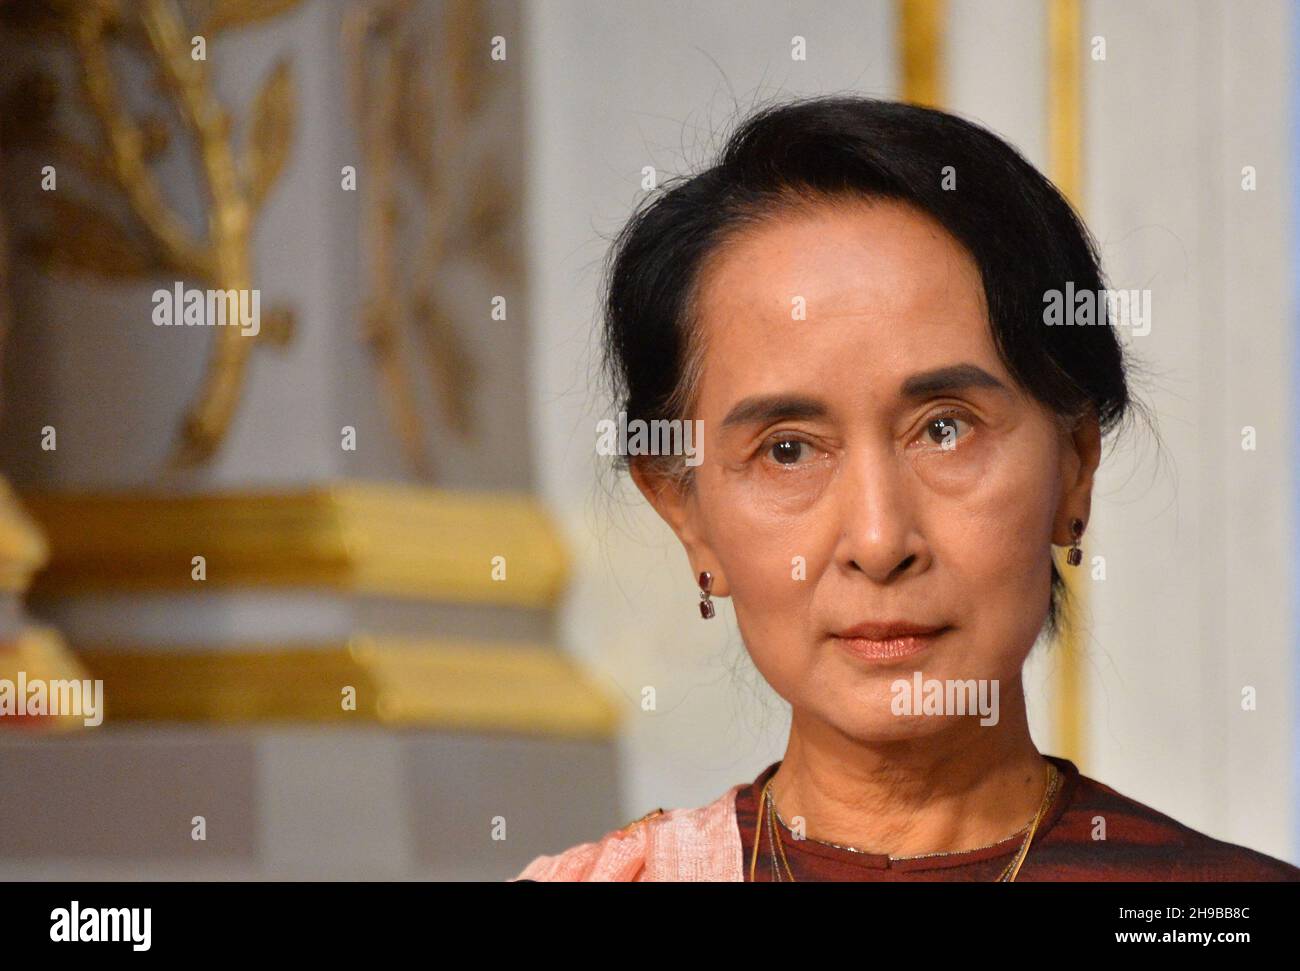 Datei-Foto vom 15. April 2014 von Myanmar Oppositionsführerin und Friedensnobelpreisträgerin Aung San Suu Kyi im Elysee-Präsidentenpalast in Paris, Frankreich. Aung San Suu Kyi, die aus Myanmar gedrängte Führerin, wurde zu vier Jahren Gefängnis verurteilt, das erste in einer Reihe von Urteilen, die sie lebenslänglich inhaftieren könnten. Sie wurde wegen Anstiftung zu Dissens und des Vergehens gegen die Covid-Regeln nach einem Naturkatastrophen-Gesetz für schuldig befunden. Foto von Christian Liewig/ABACAPRESS.COM Stockfoto